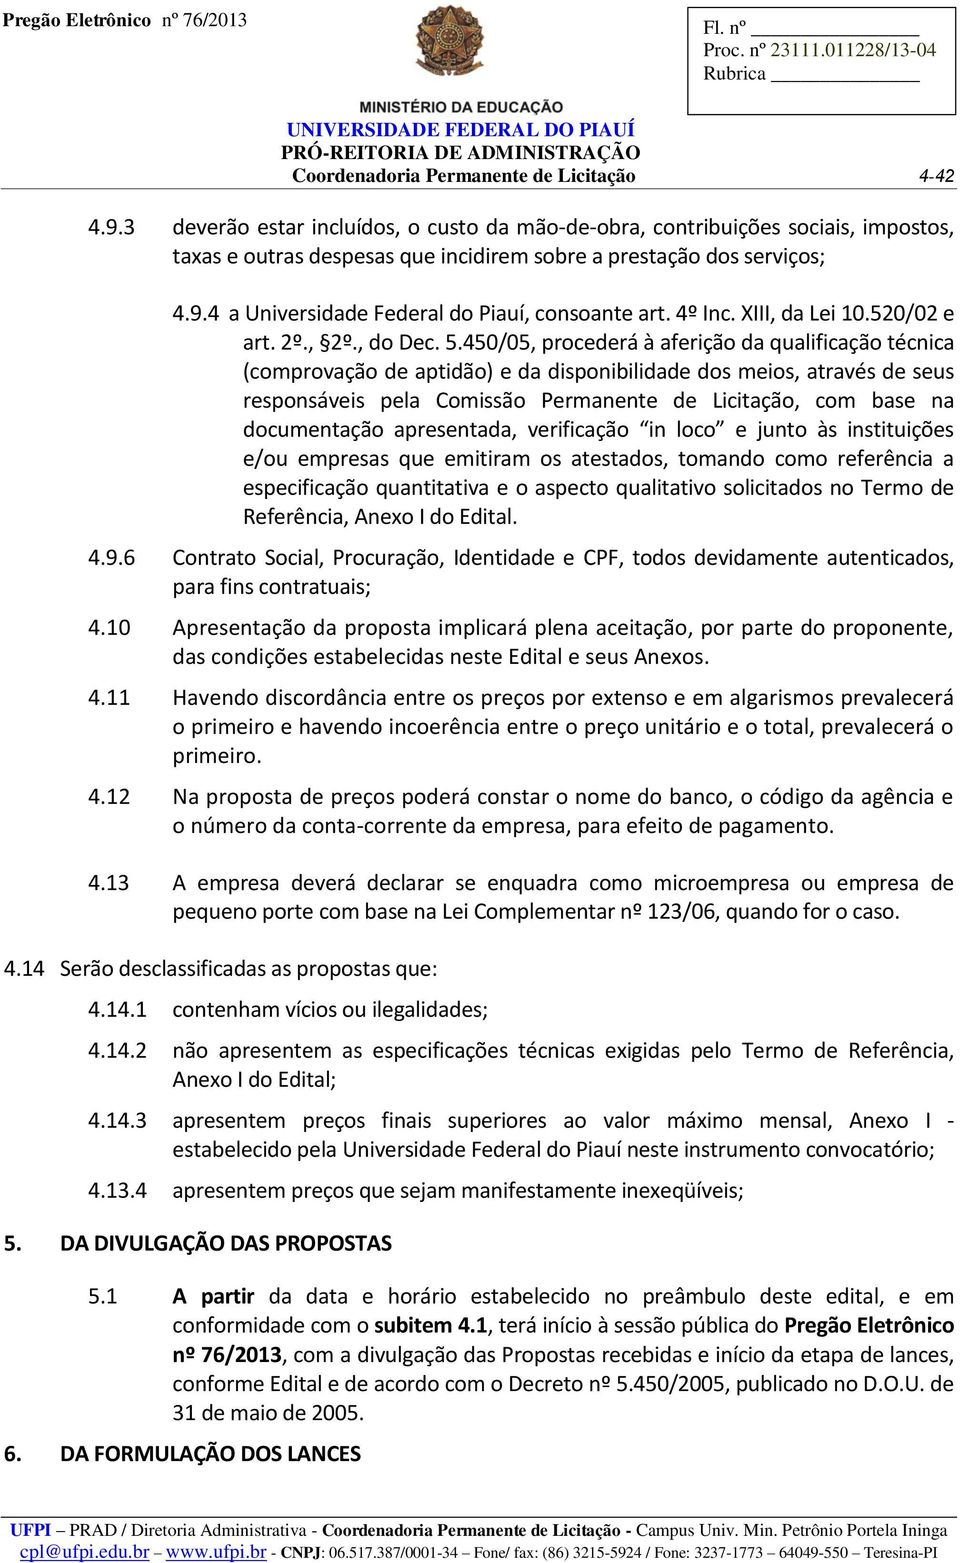 4 a Universidade Federal do Piauí, consoante art. 4º Inc. XIII, da Lei 10.520/02 e art. 2º., 2º., do Dec. 5.